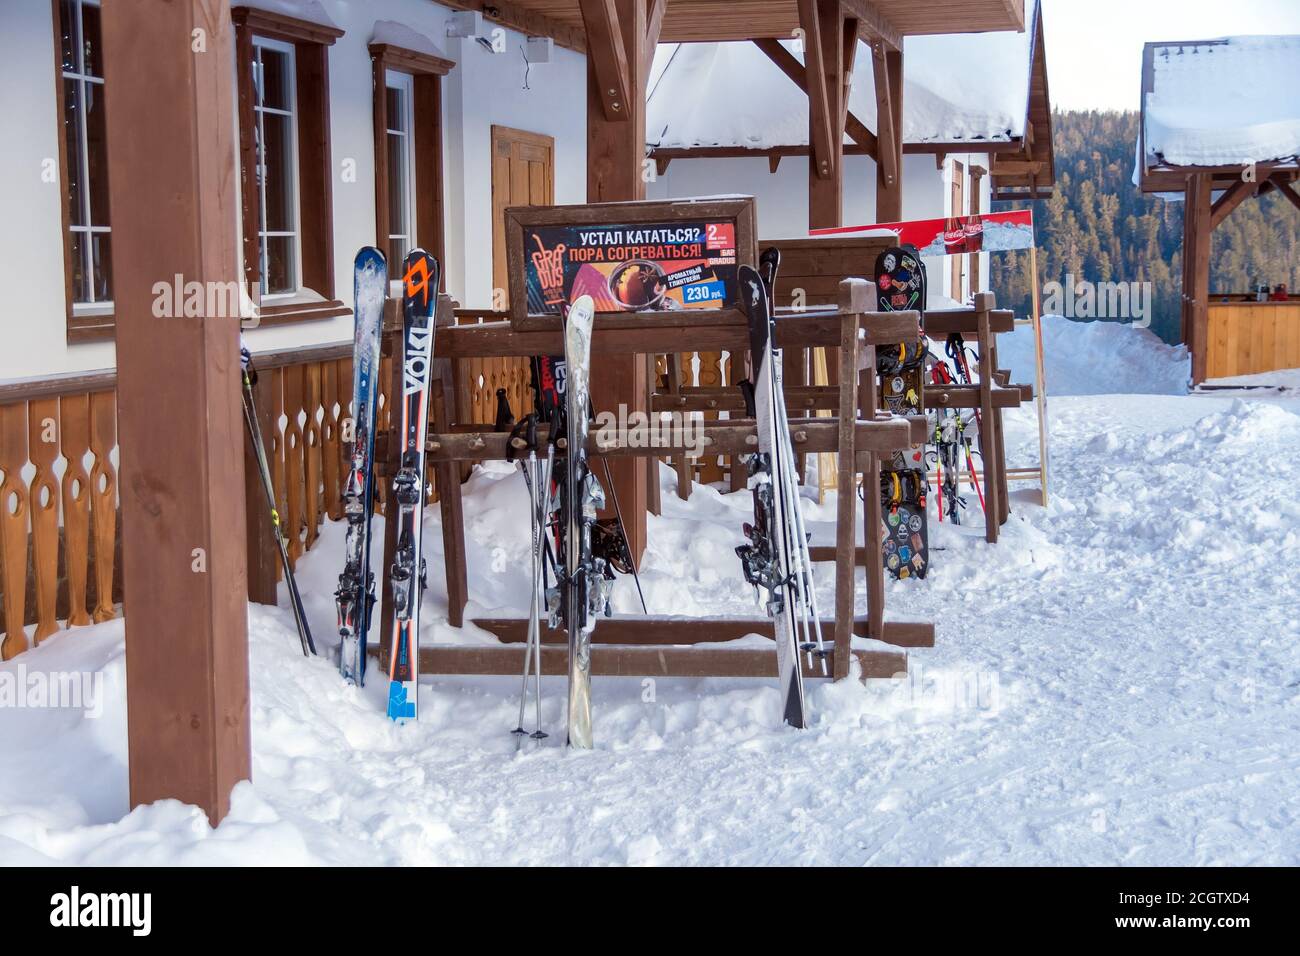 Gli sci si trovano su supporti vicino all'edificio principale del resort. Foto Stock